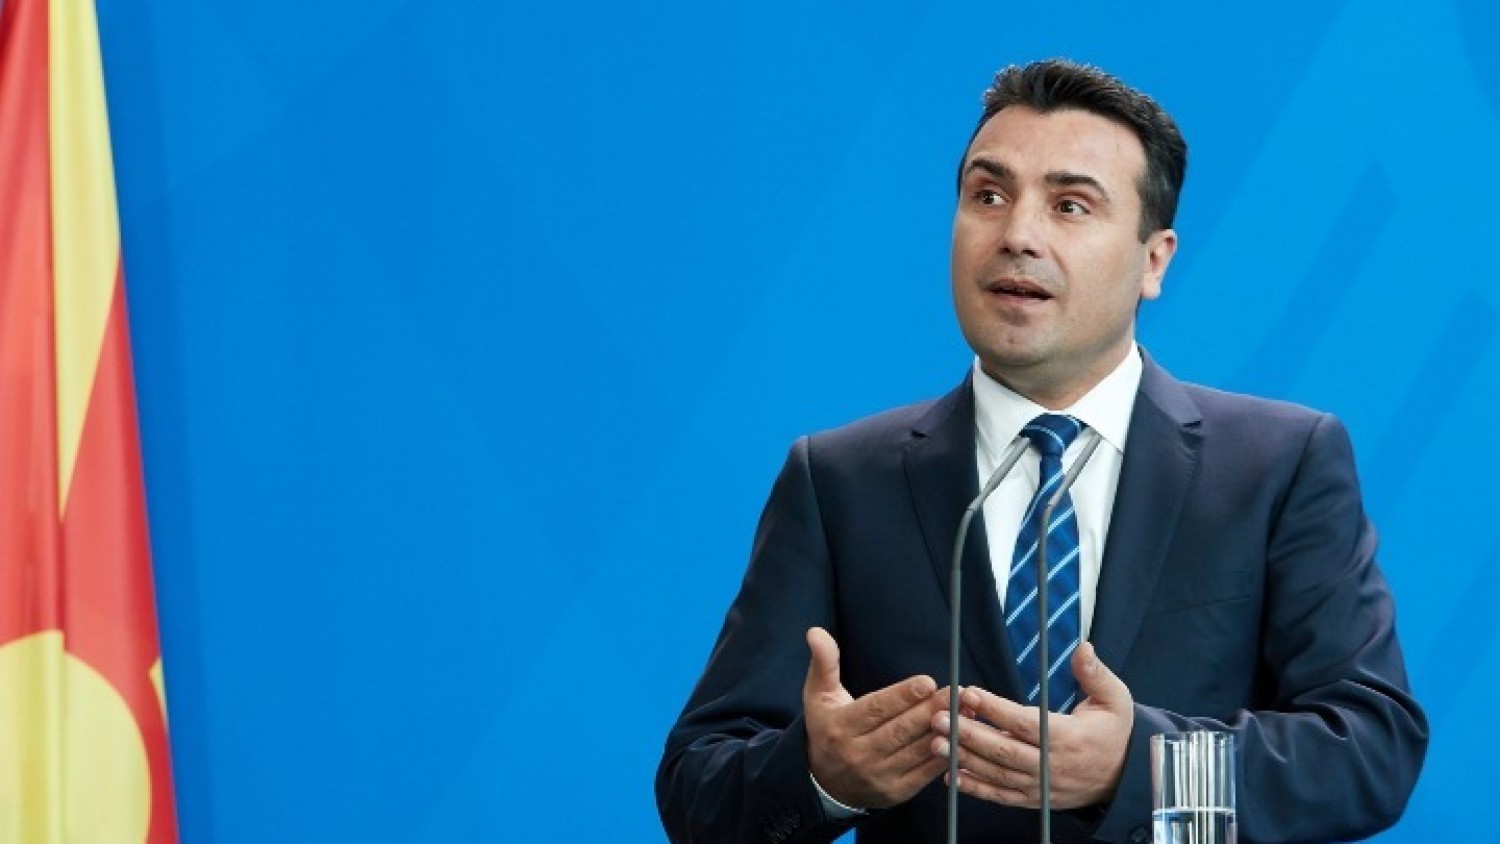 Ηγέτης αντιπολίτευσης Σκοπίων: «Ο Ζάεφ διατάσσει δολοφονίες!»